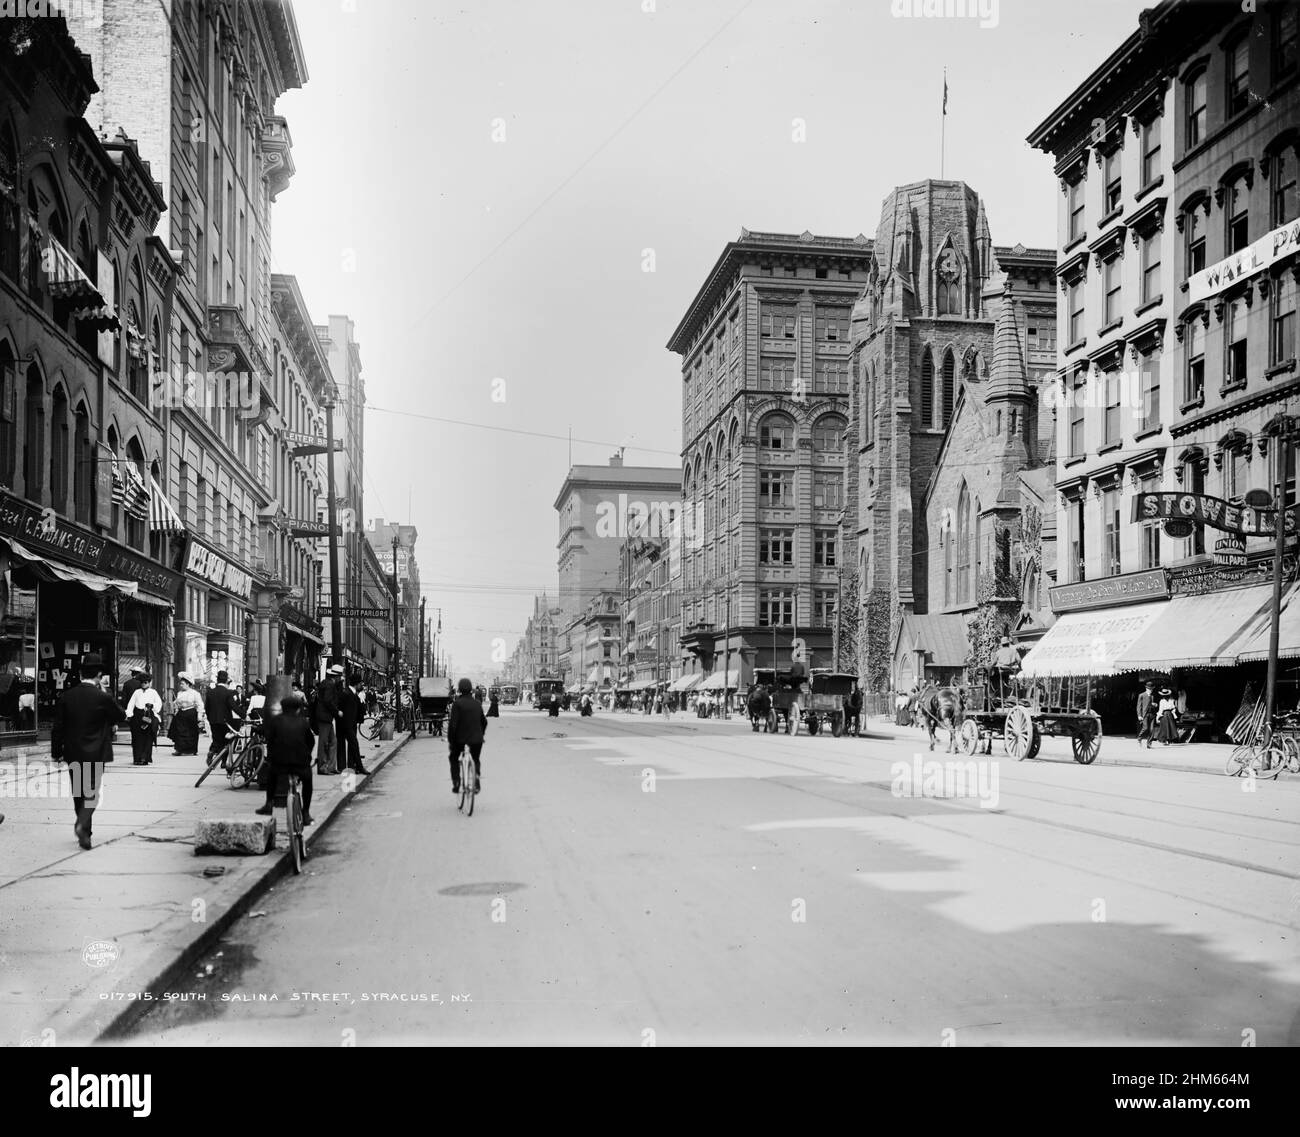 South Salina Street, Syracuse, N.Y. von Detroit Publishing Co., Verleger. 1900-1906. Sehr viel digital verbessert. Stockfoto